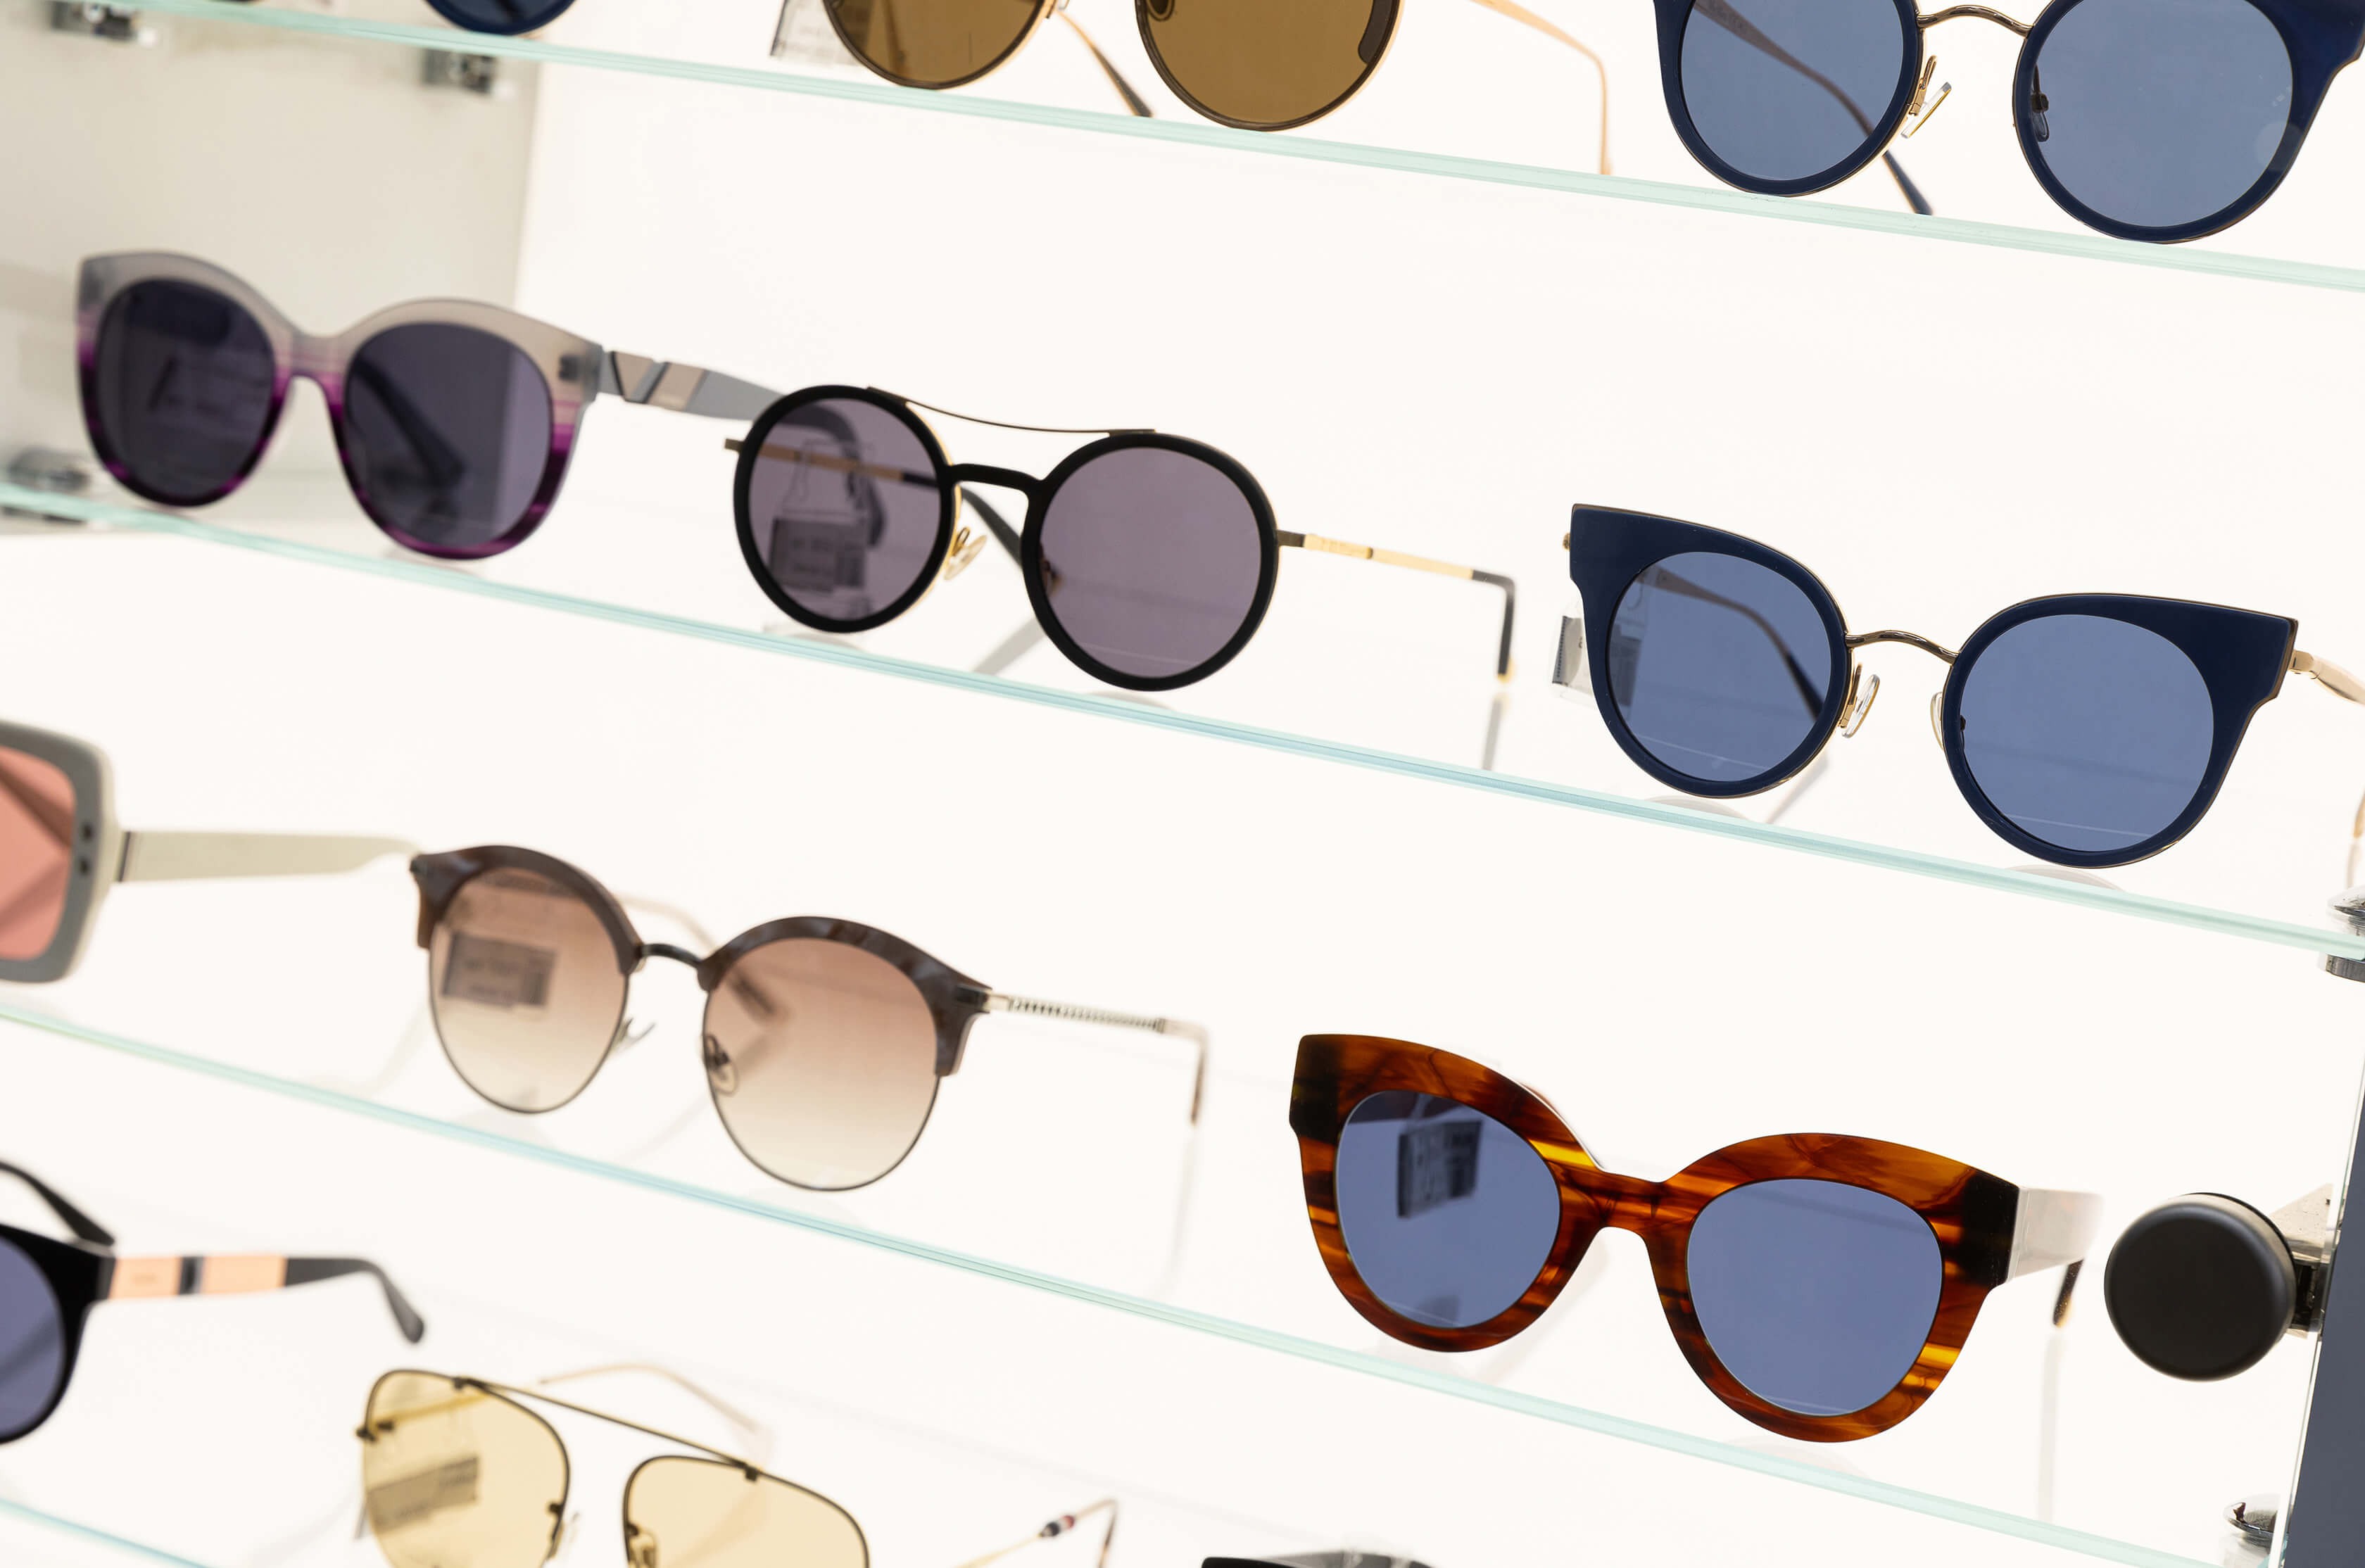 Sunglasses: Frames and Lenses at Shades World